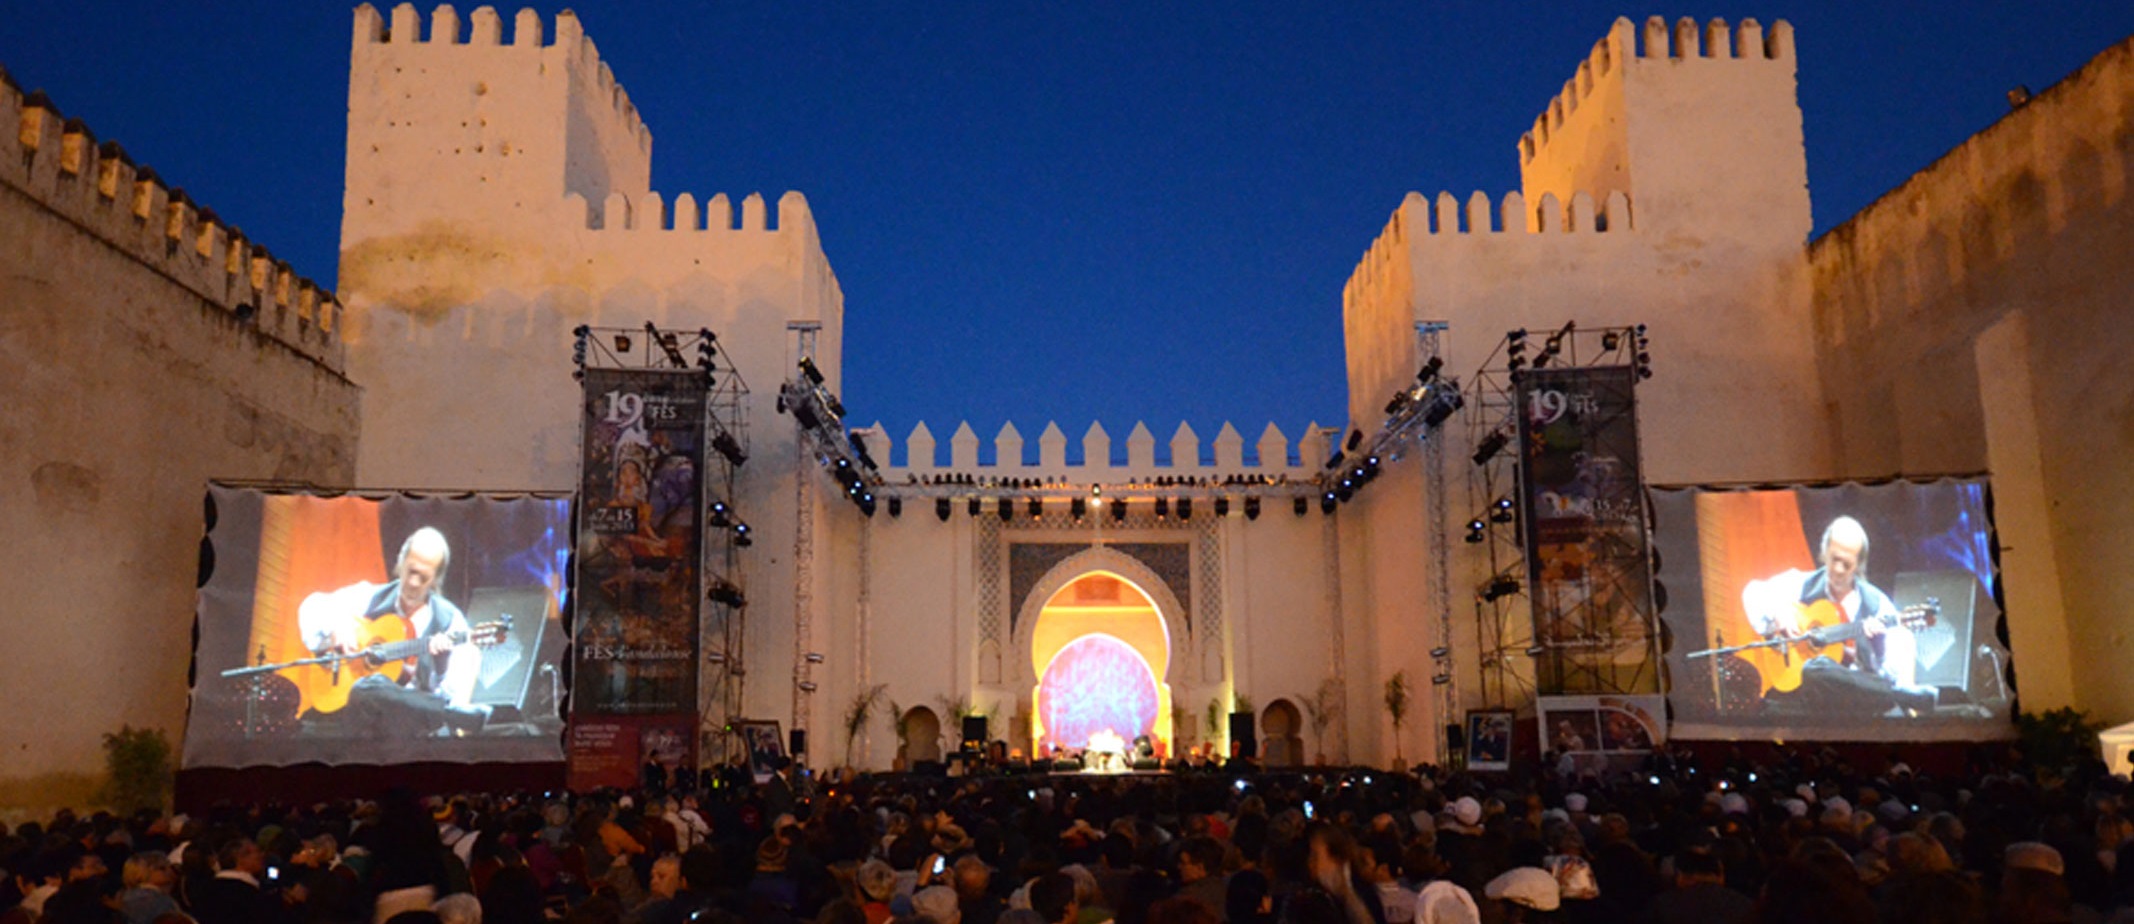 Fez Festival Tours